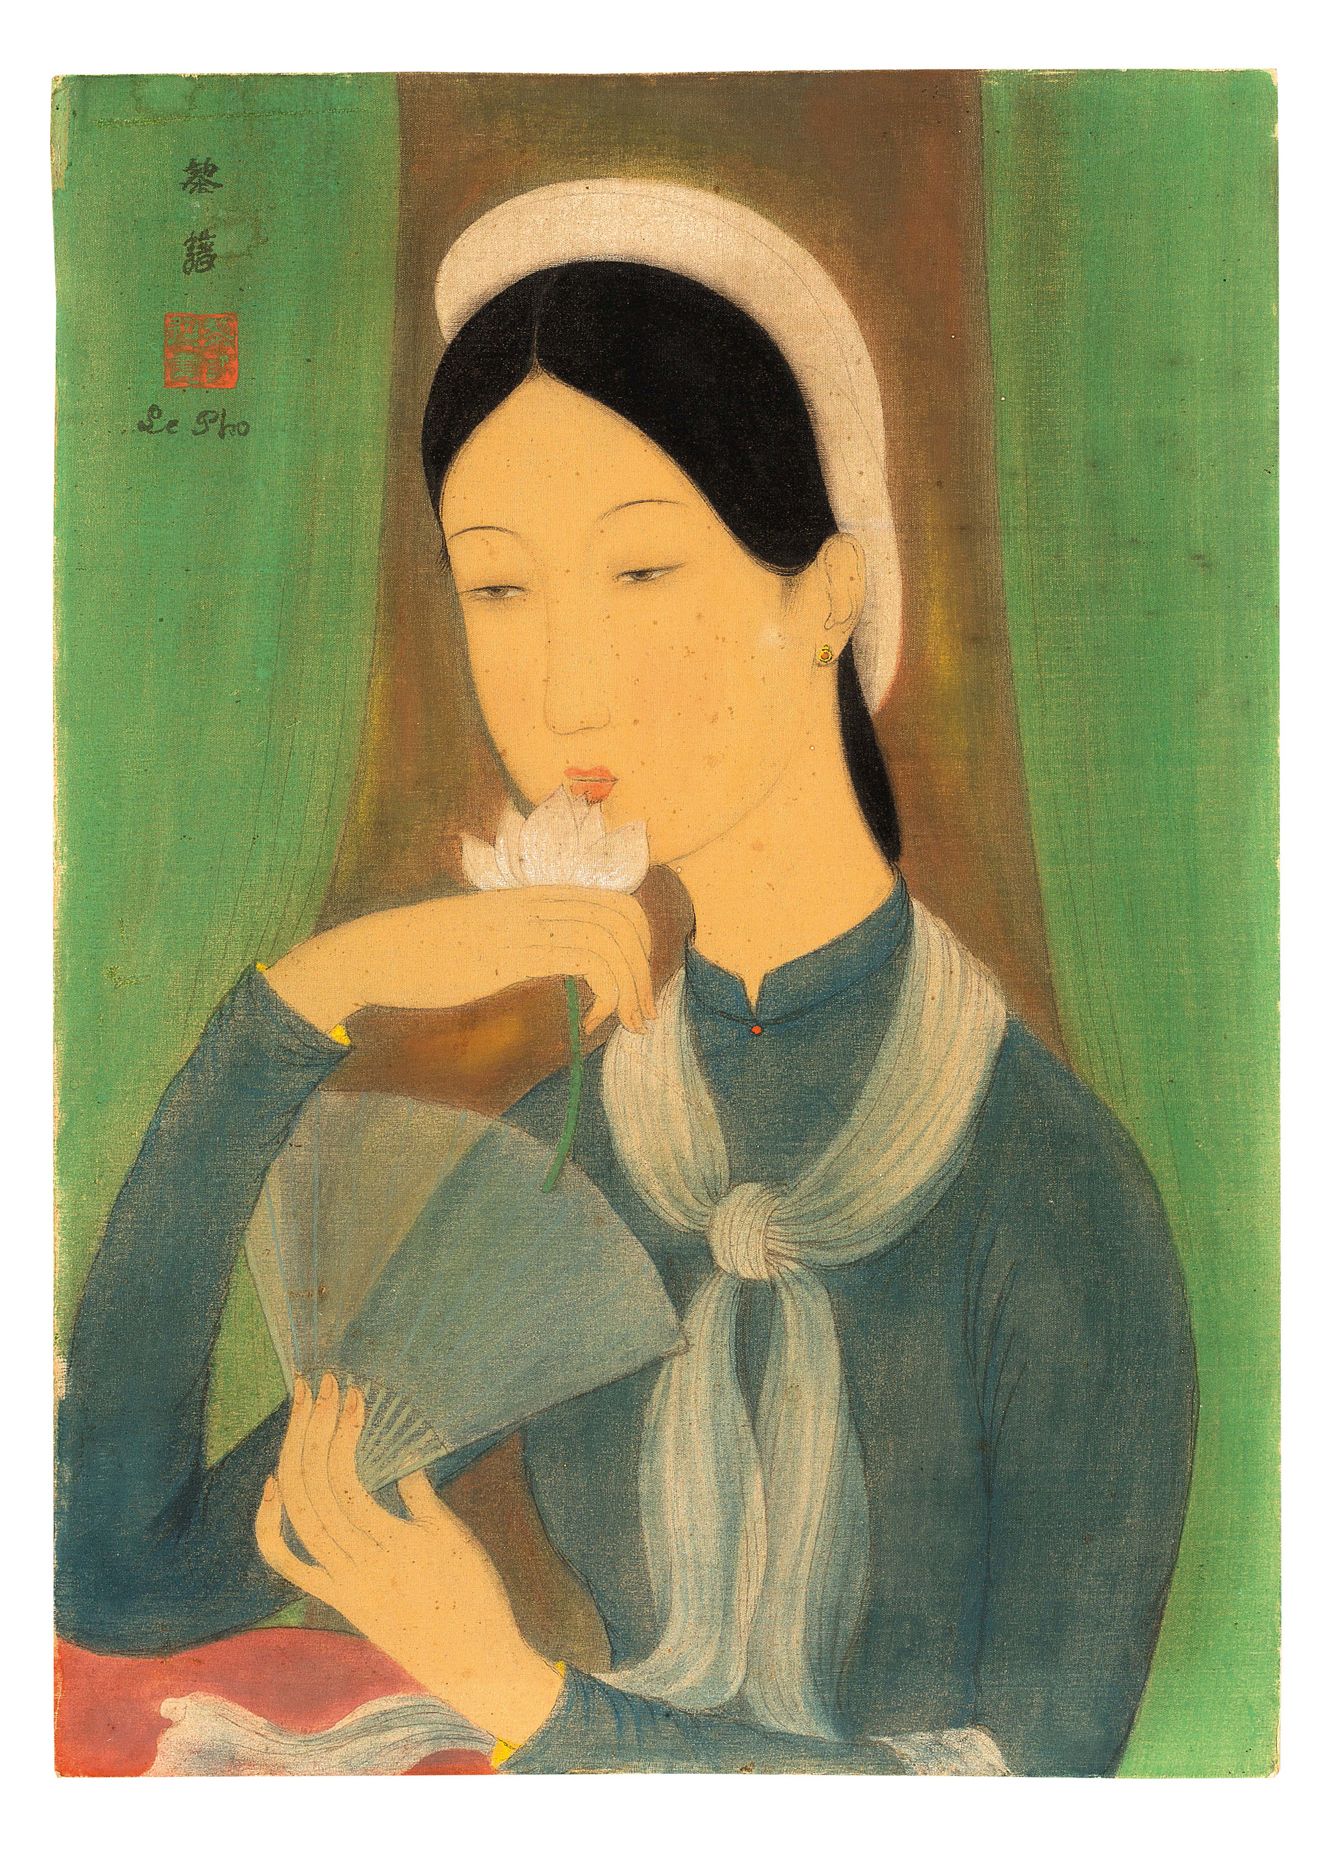 LÊ PHỔ (1907-2001) 
Mujer joven con loto y abanico

Tinta y colores sobre seda, &hellip;